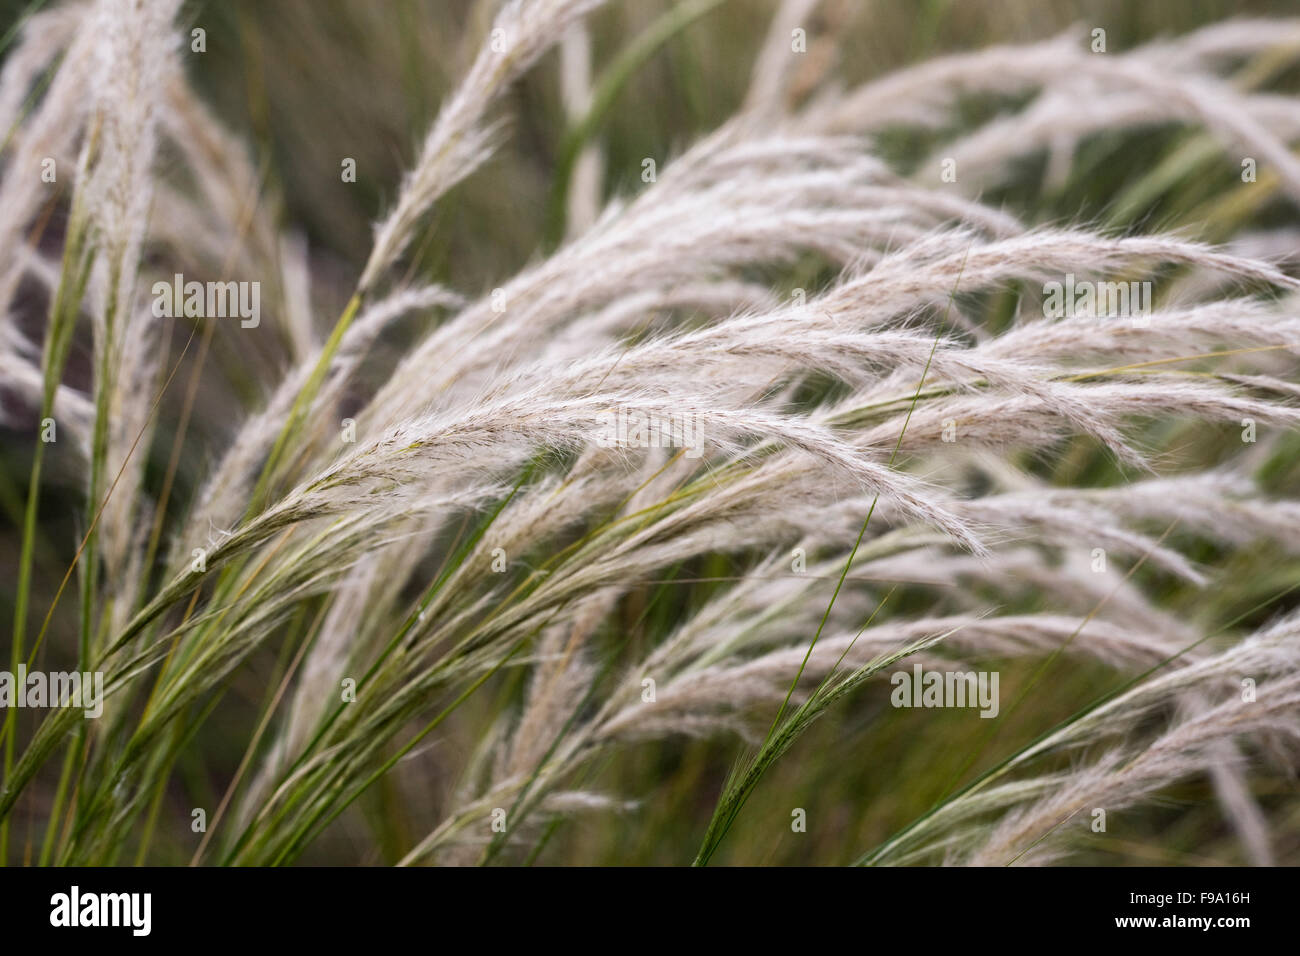 Jarava ichu. Peruvian feathergrass. Stock Photo